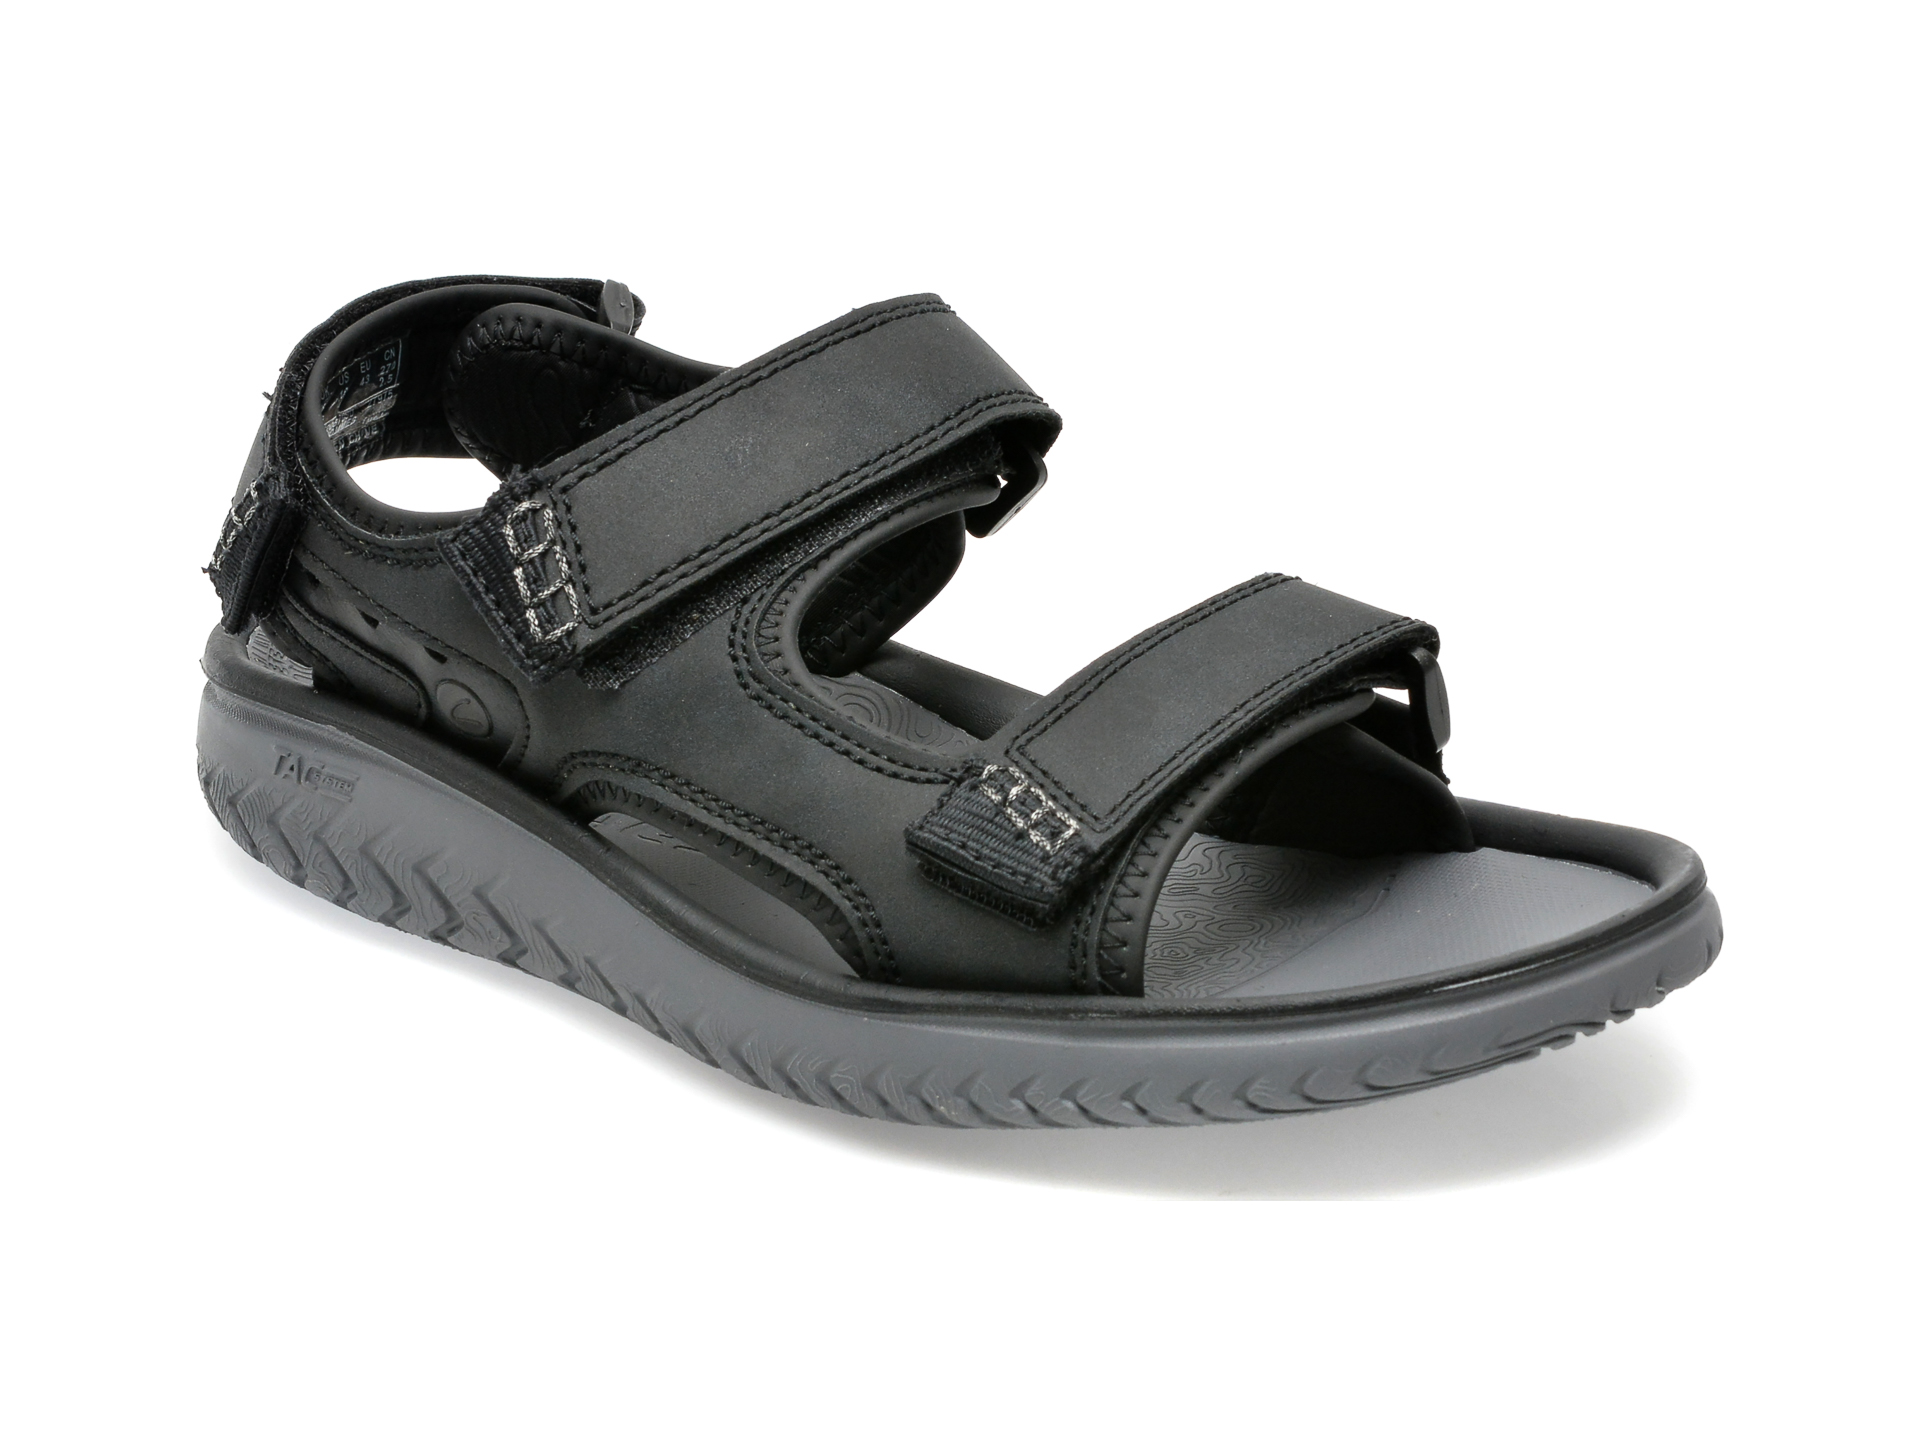 Sandale CLARKS negre, WESLEY BAY 01-S, din piele ecologica barbati 2023-03-21